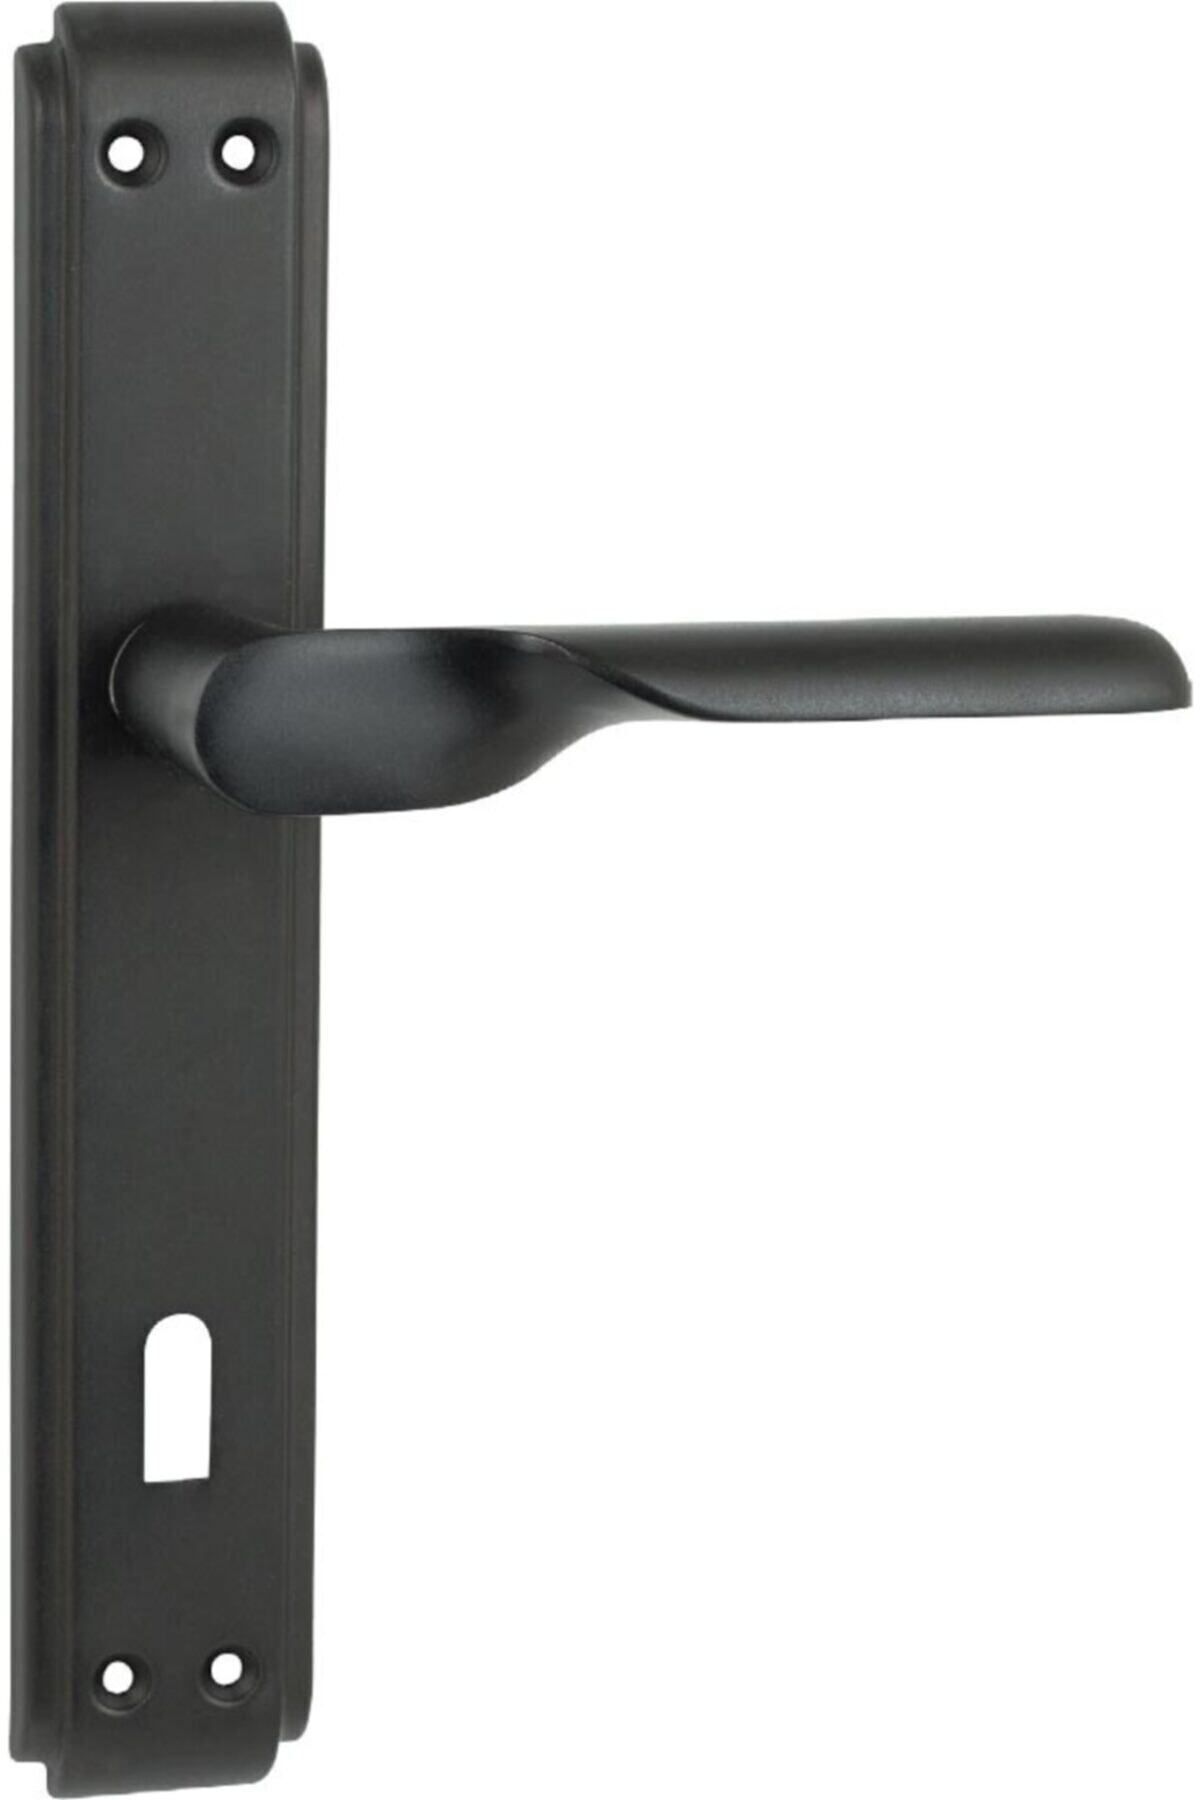 İyem Smart Aynalı Kapı Kolu ( Oda - Iç Kapısı Kol ) Mat Siyah